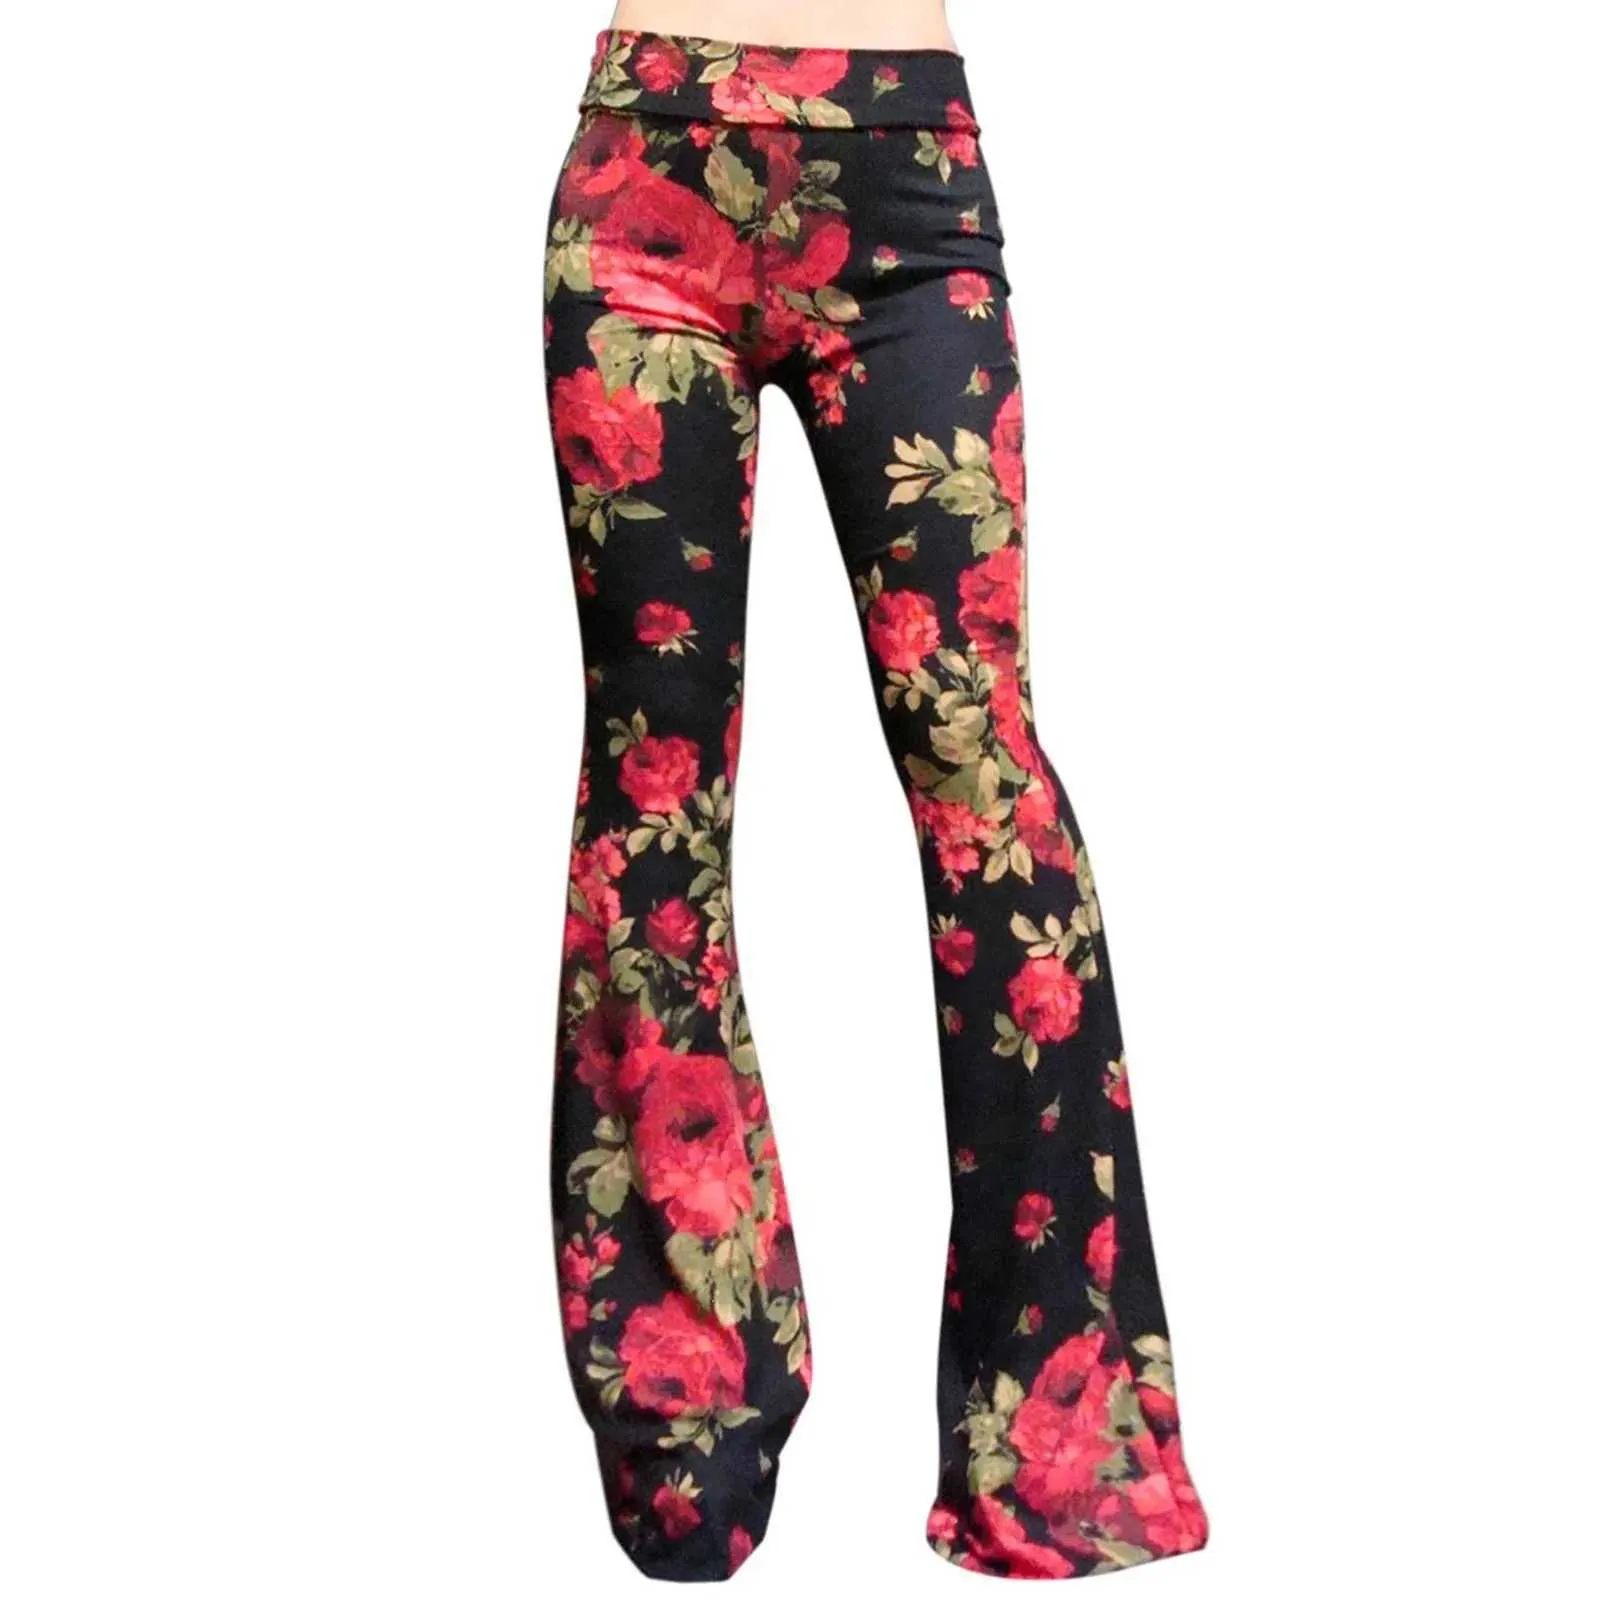 Spodnie damskie capris gorąca sprzedaż retro kwiat nadruk duży dzwonki dolne spodnie legginsy wysoka talia elastyczność legginsy sportowe trening fitness spodni Leggins Y240504